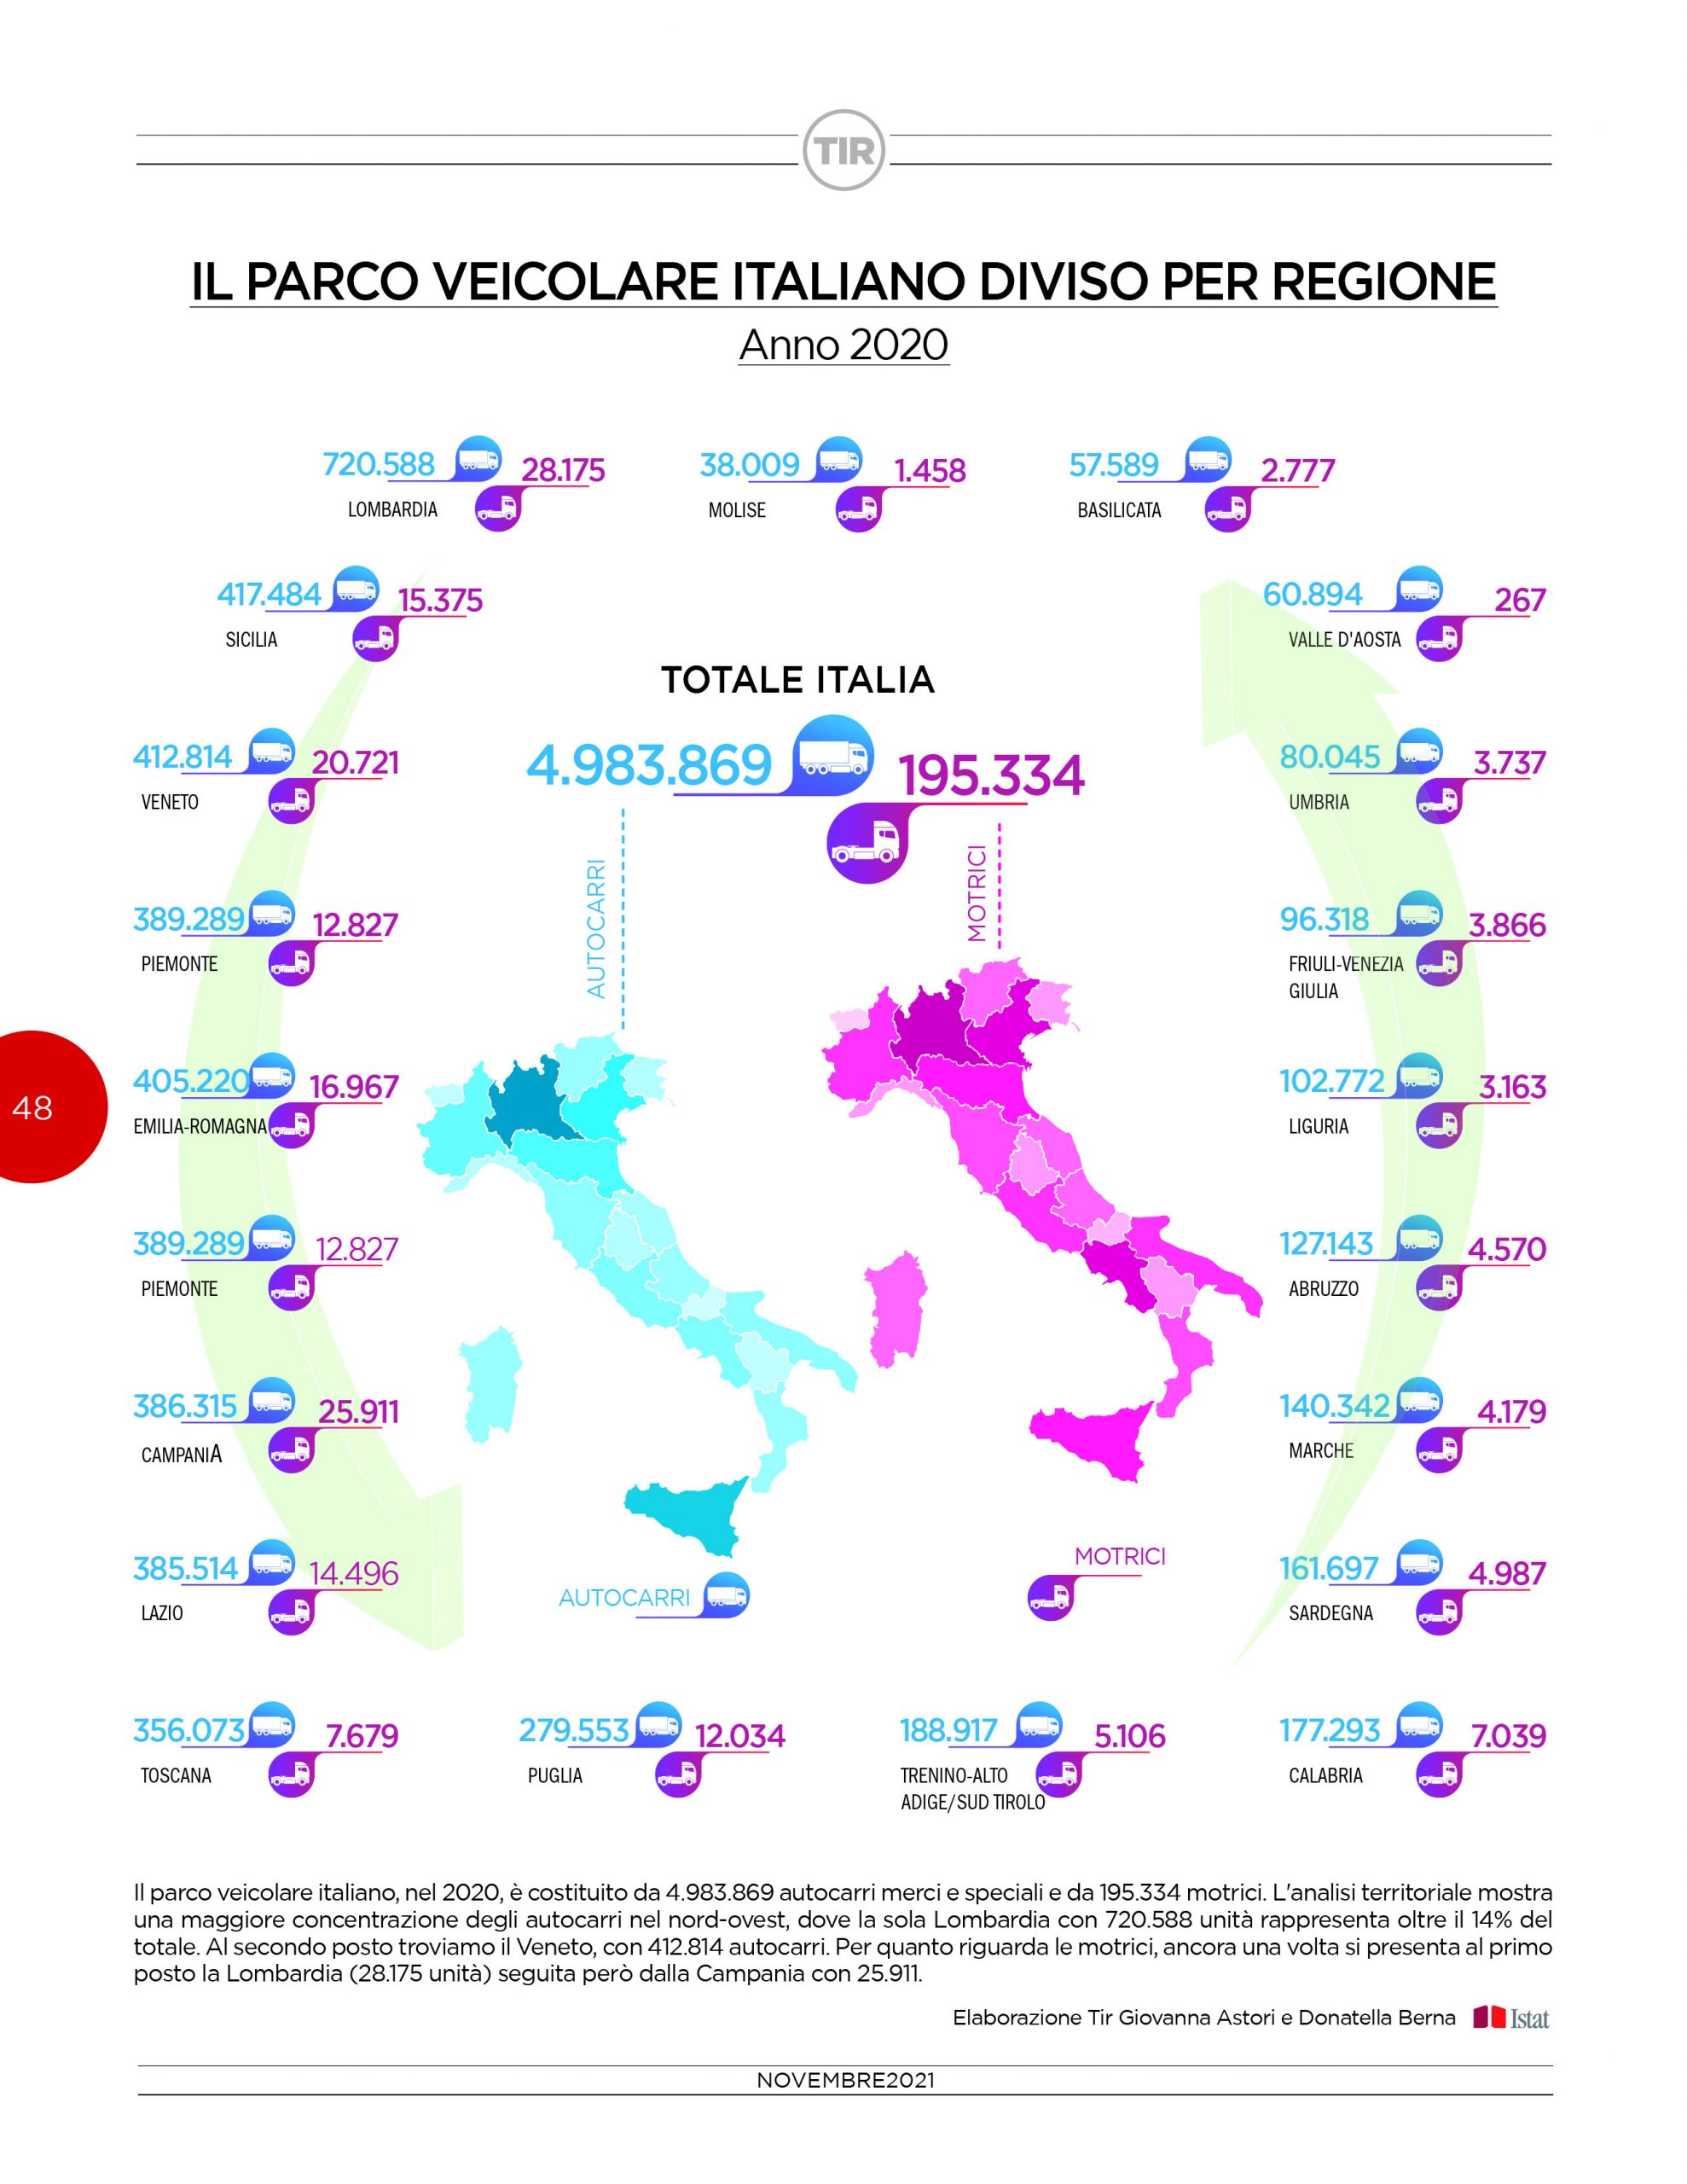 Il parco veicolare italiano diviso per regione – Anno 2020
